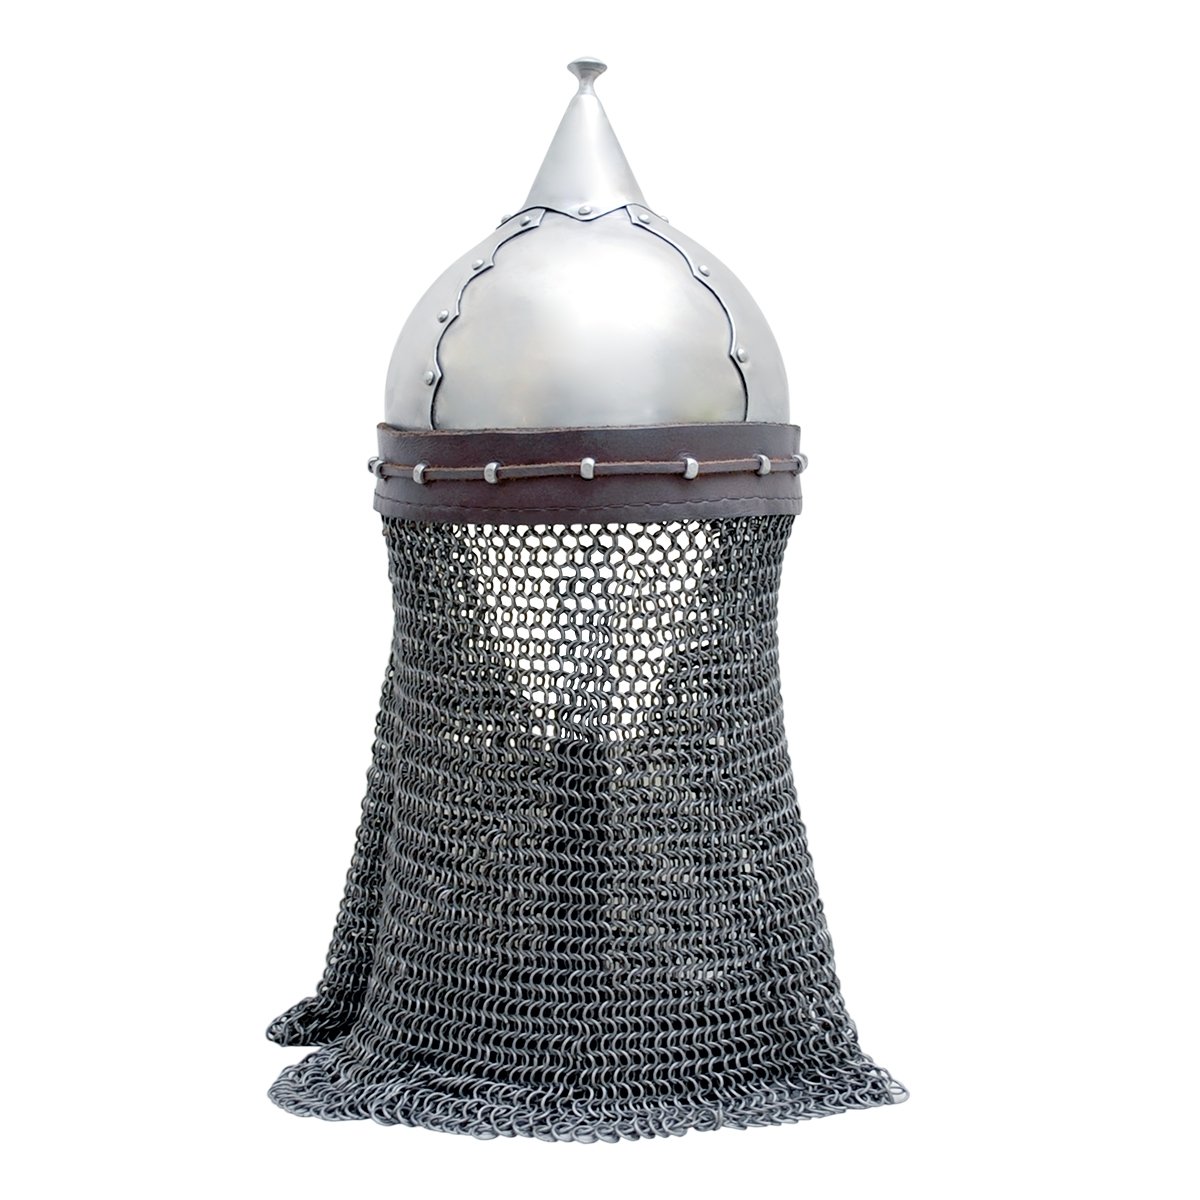 Polnischer Helm – 13. Jahrhundert, Größe L